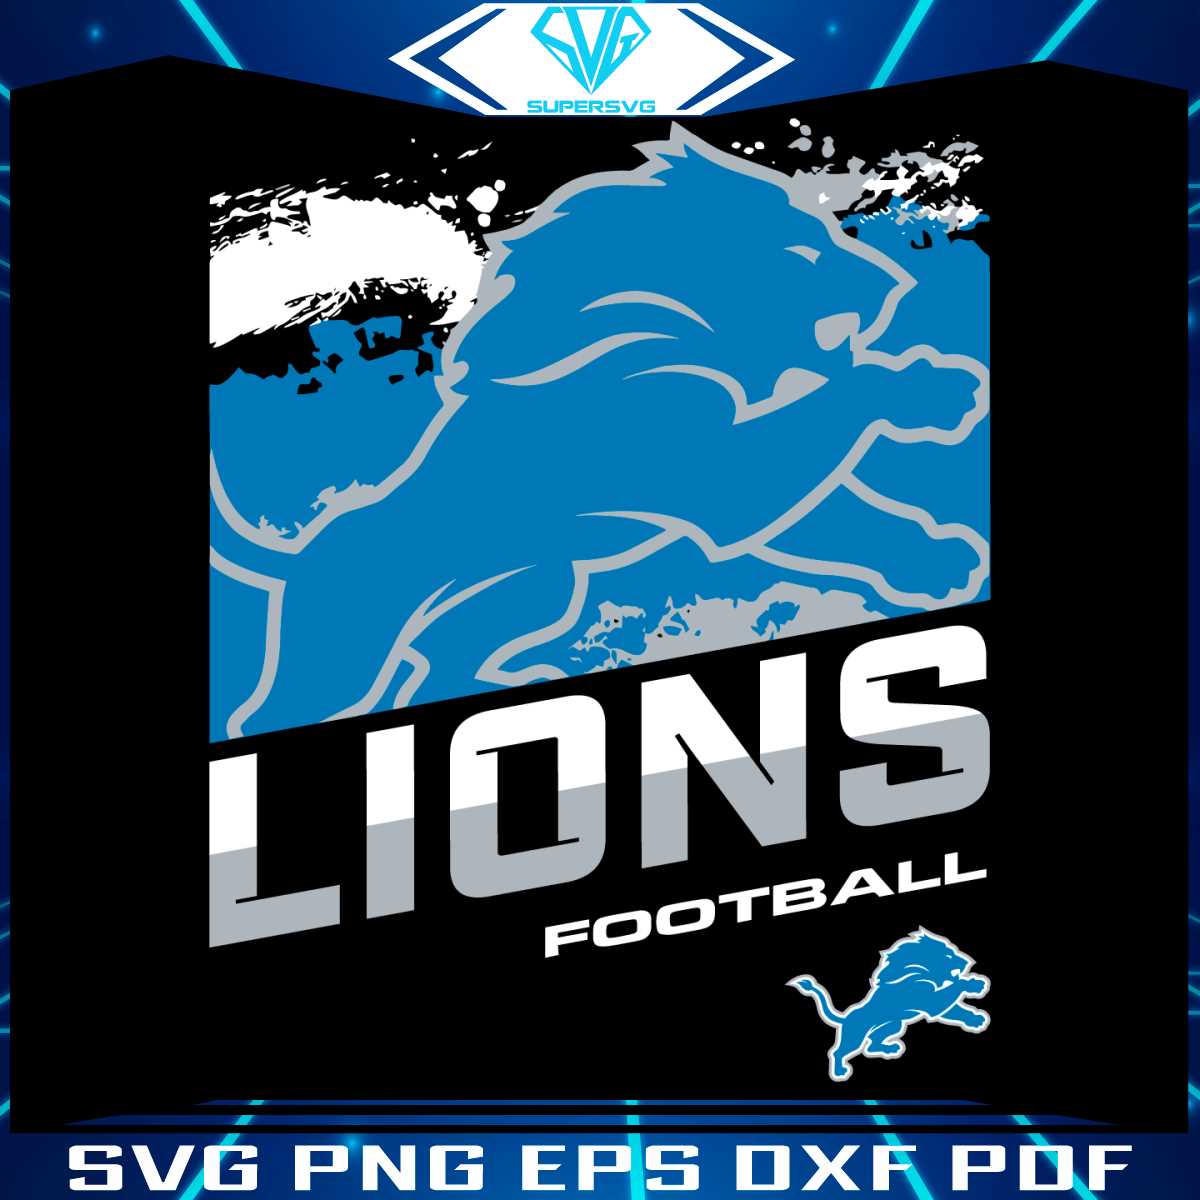 vintage-lions-football-detroit-svg-digital-download